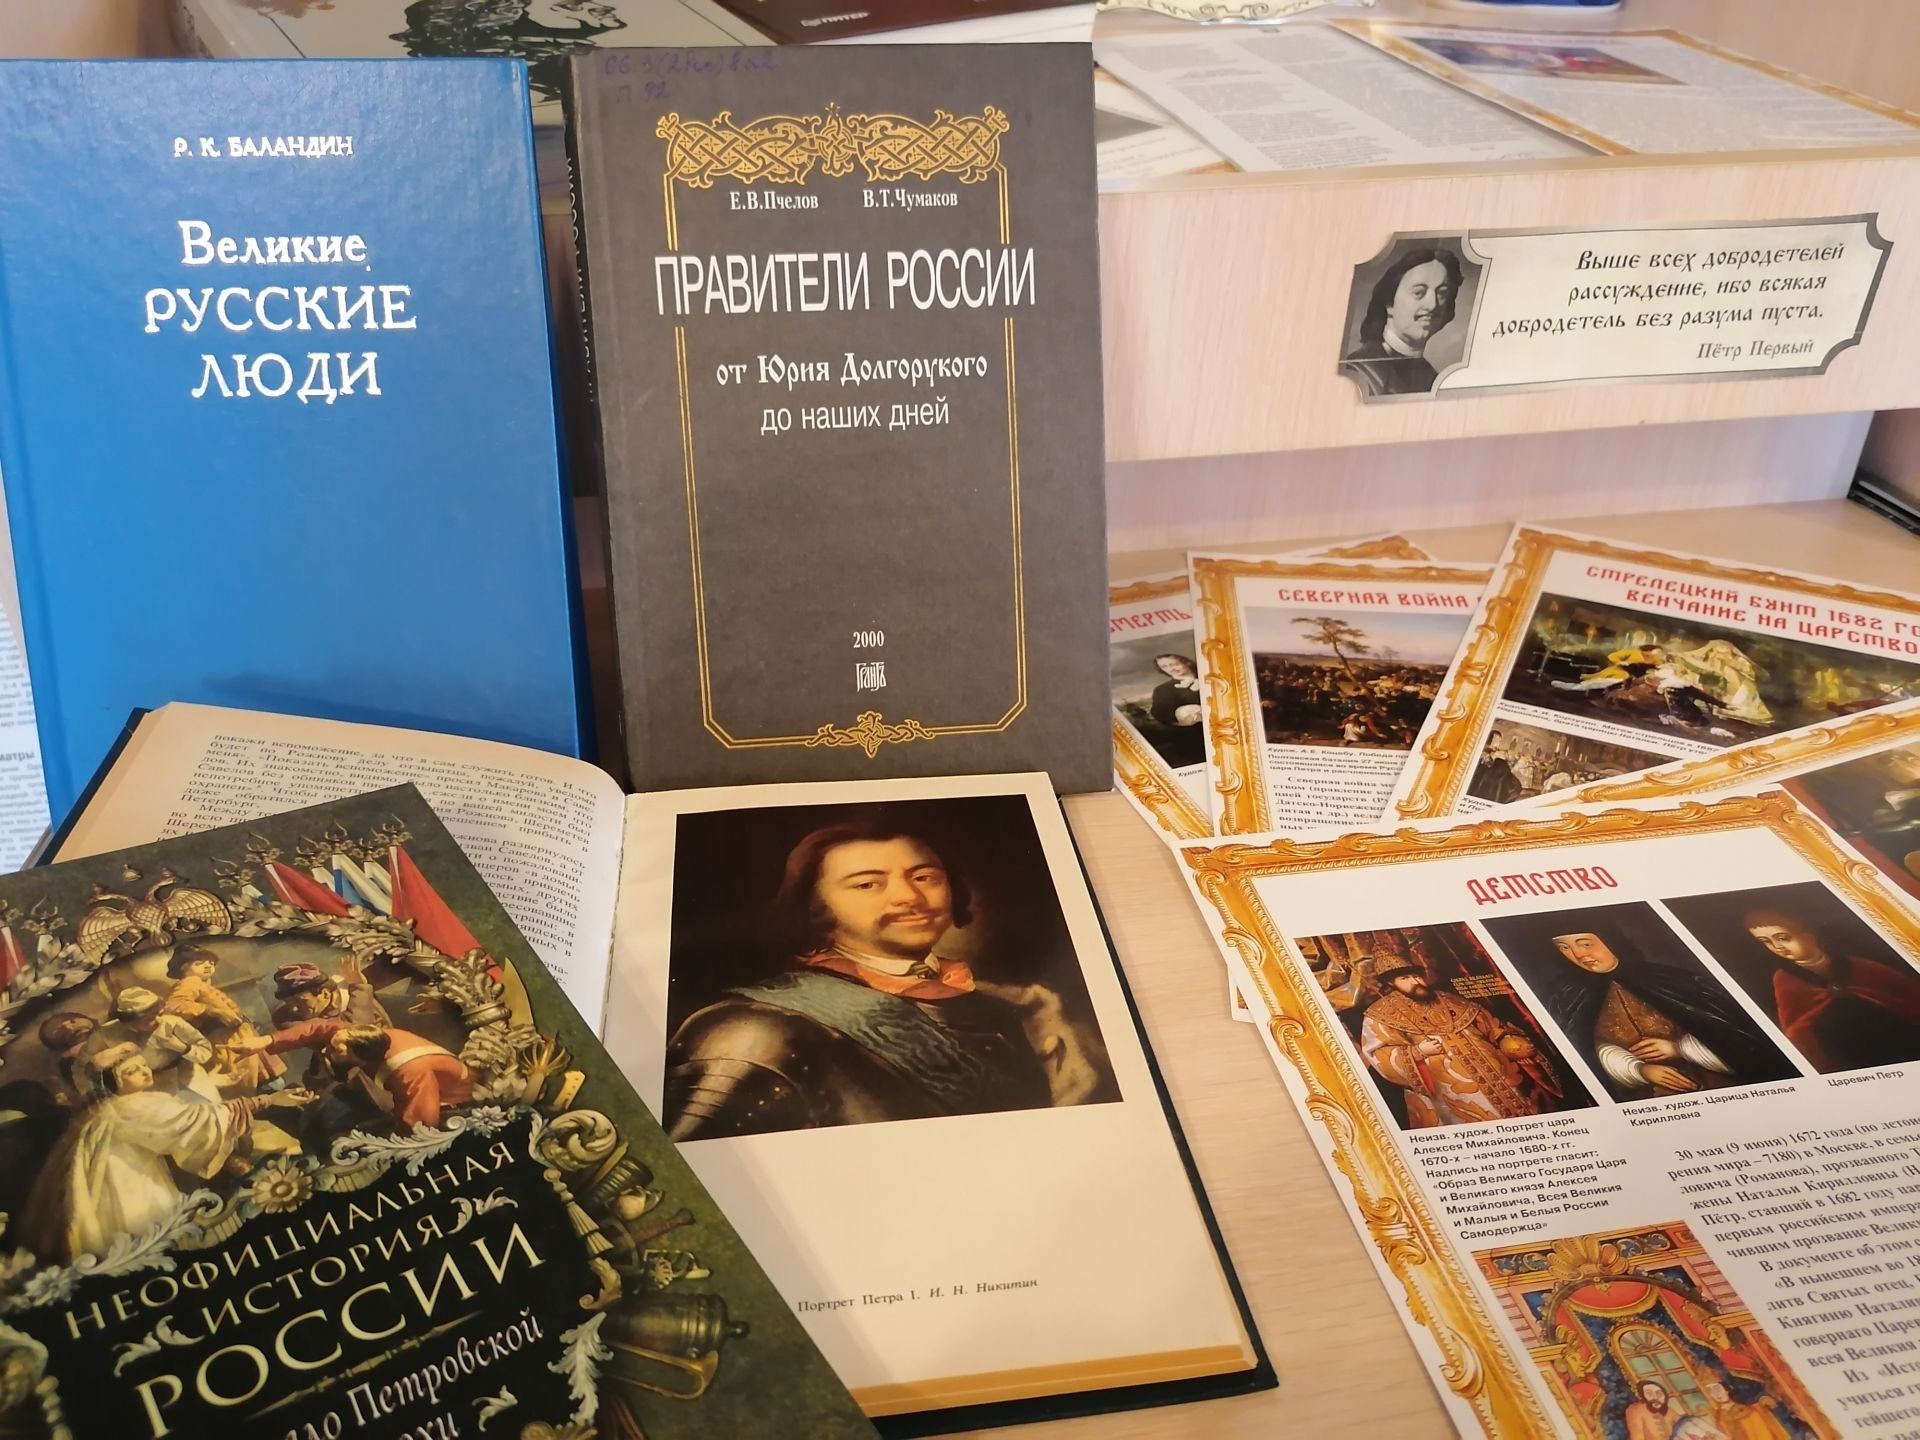 В Лаишевской библиотеке открыта историческая книжная выставка